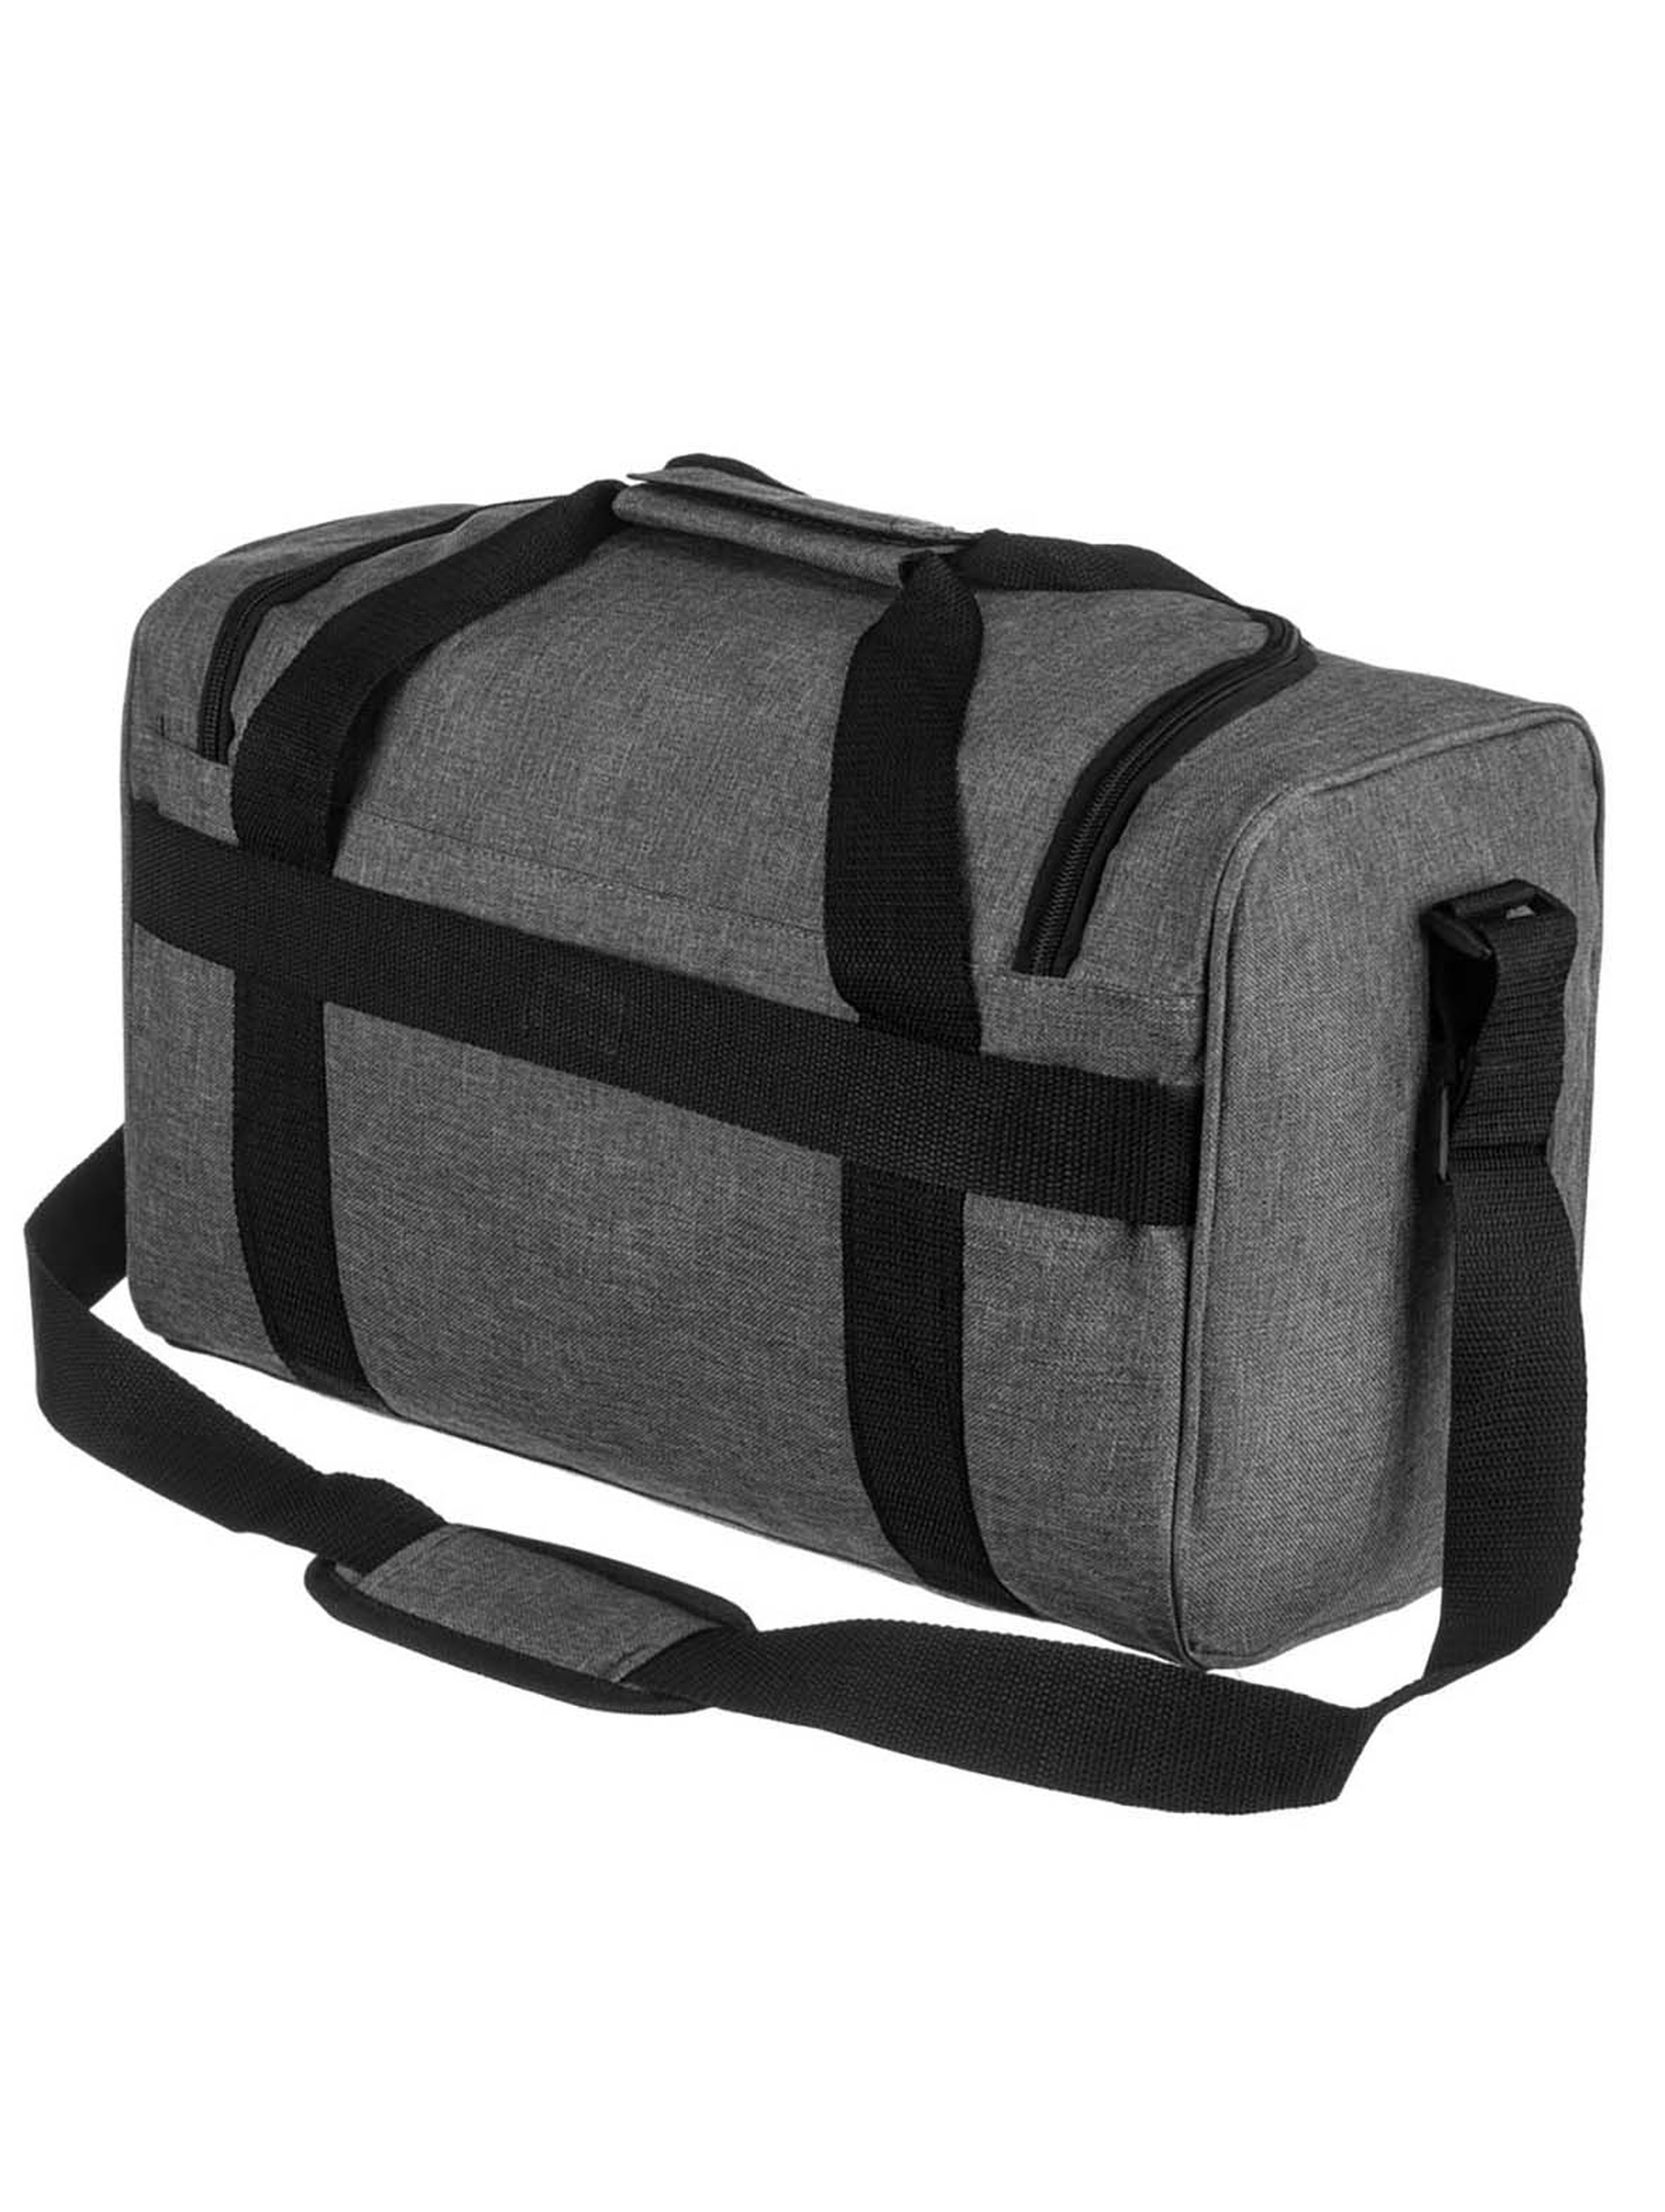 Szara torba podróżna idealna na bagaż podręczny - Peterson